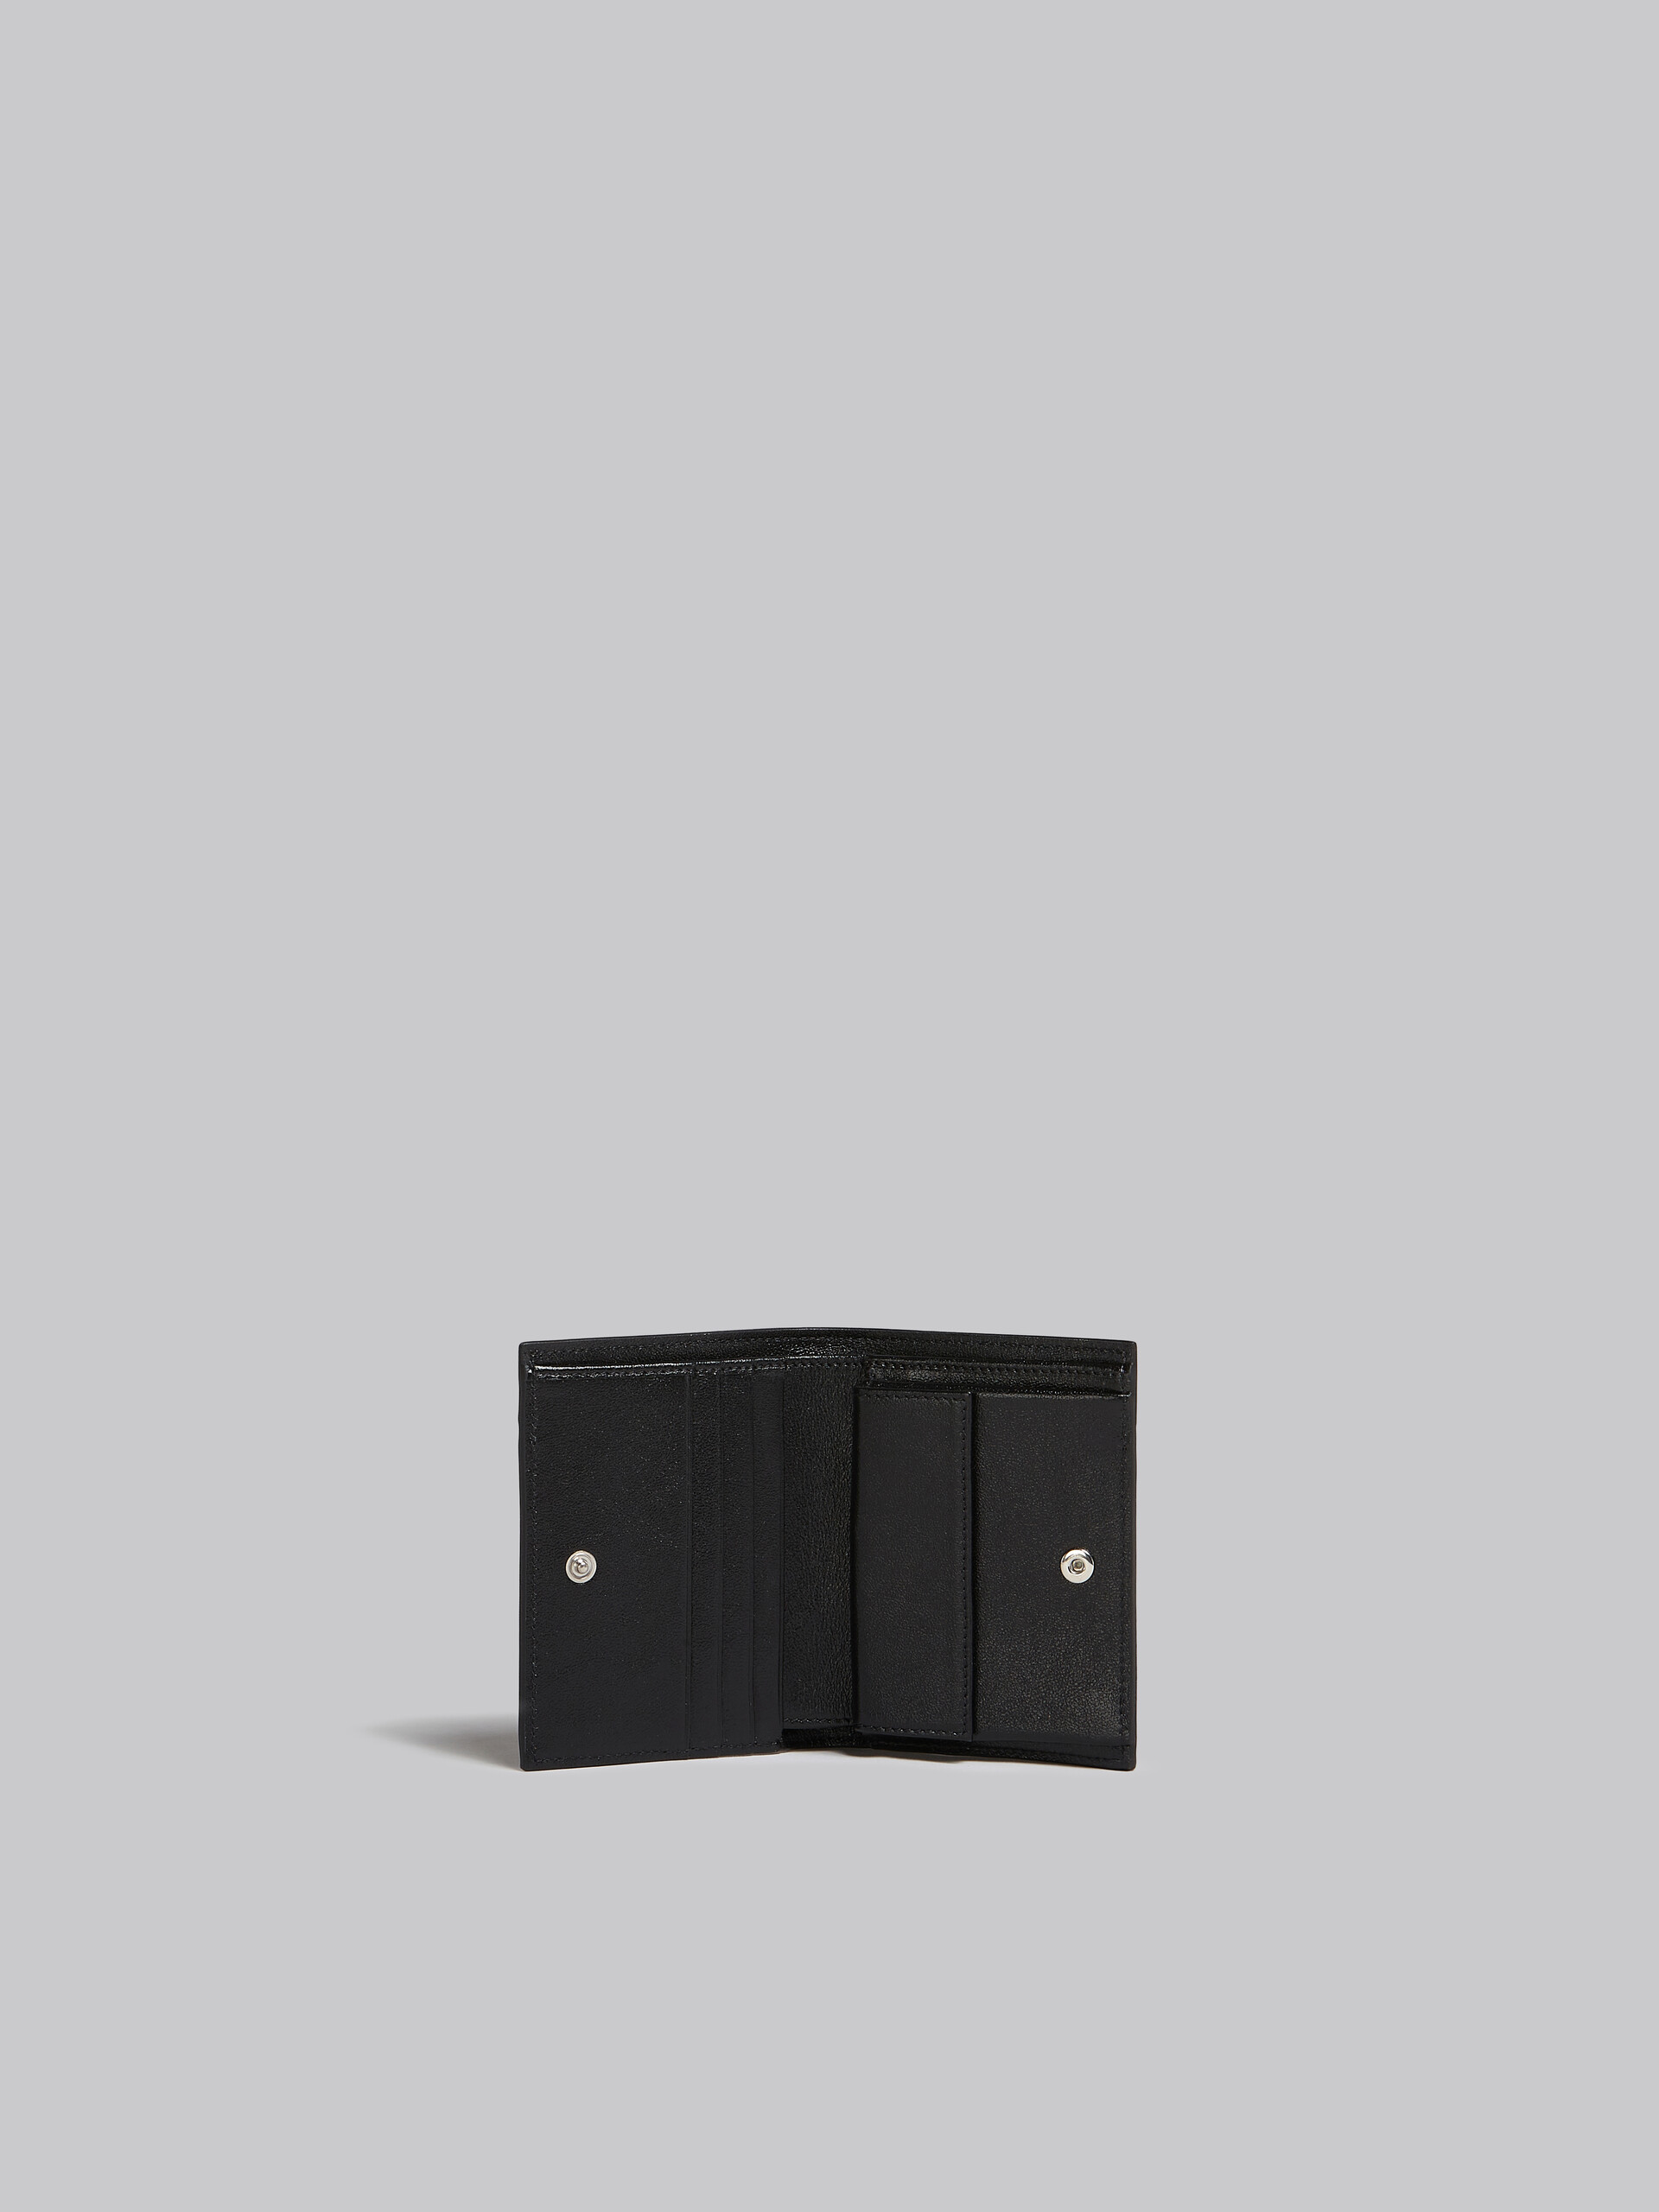 Zweifache Faltbrieftasche aus Leder in Marineblau und Schwarz - Brieftaschen - Image 2